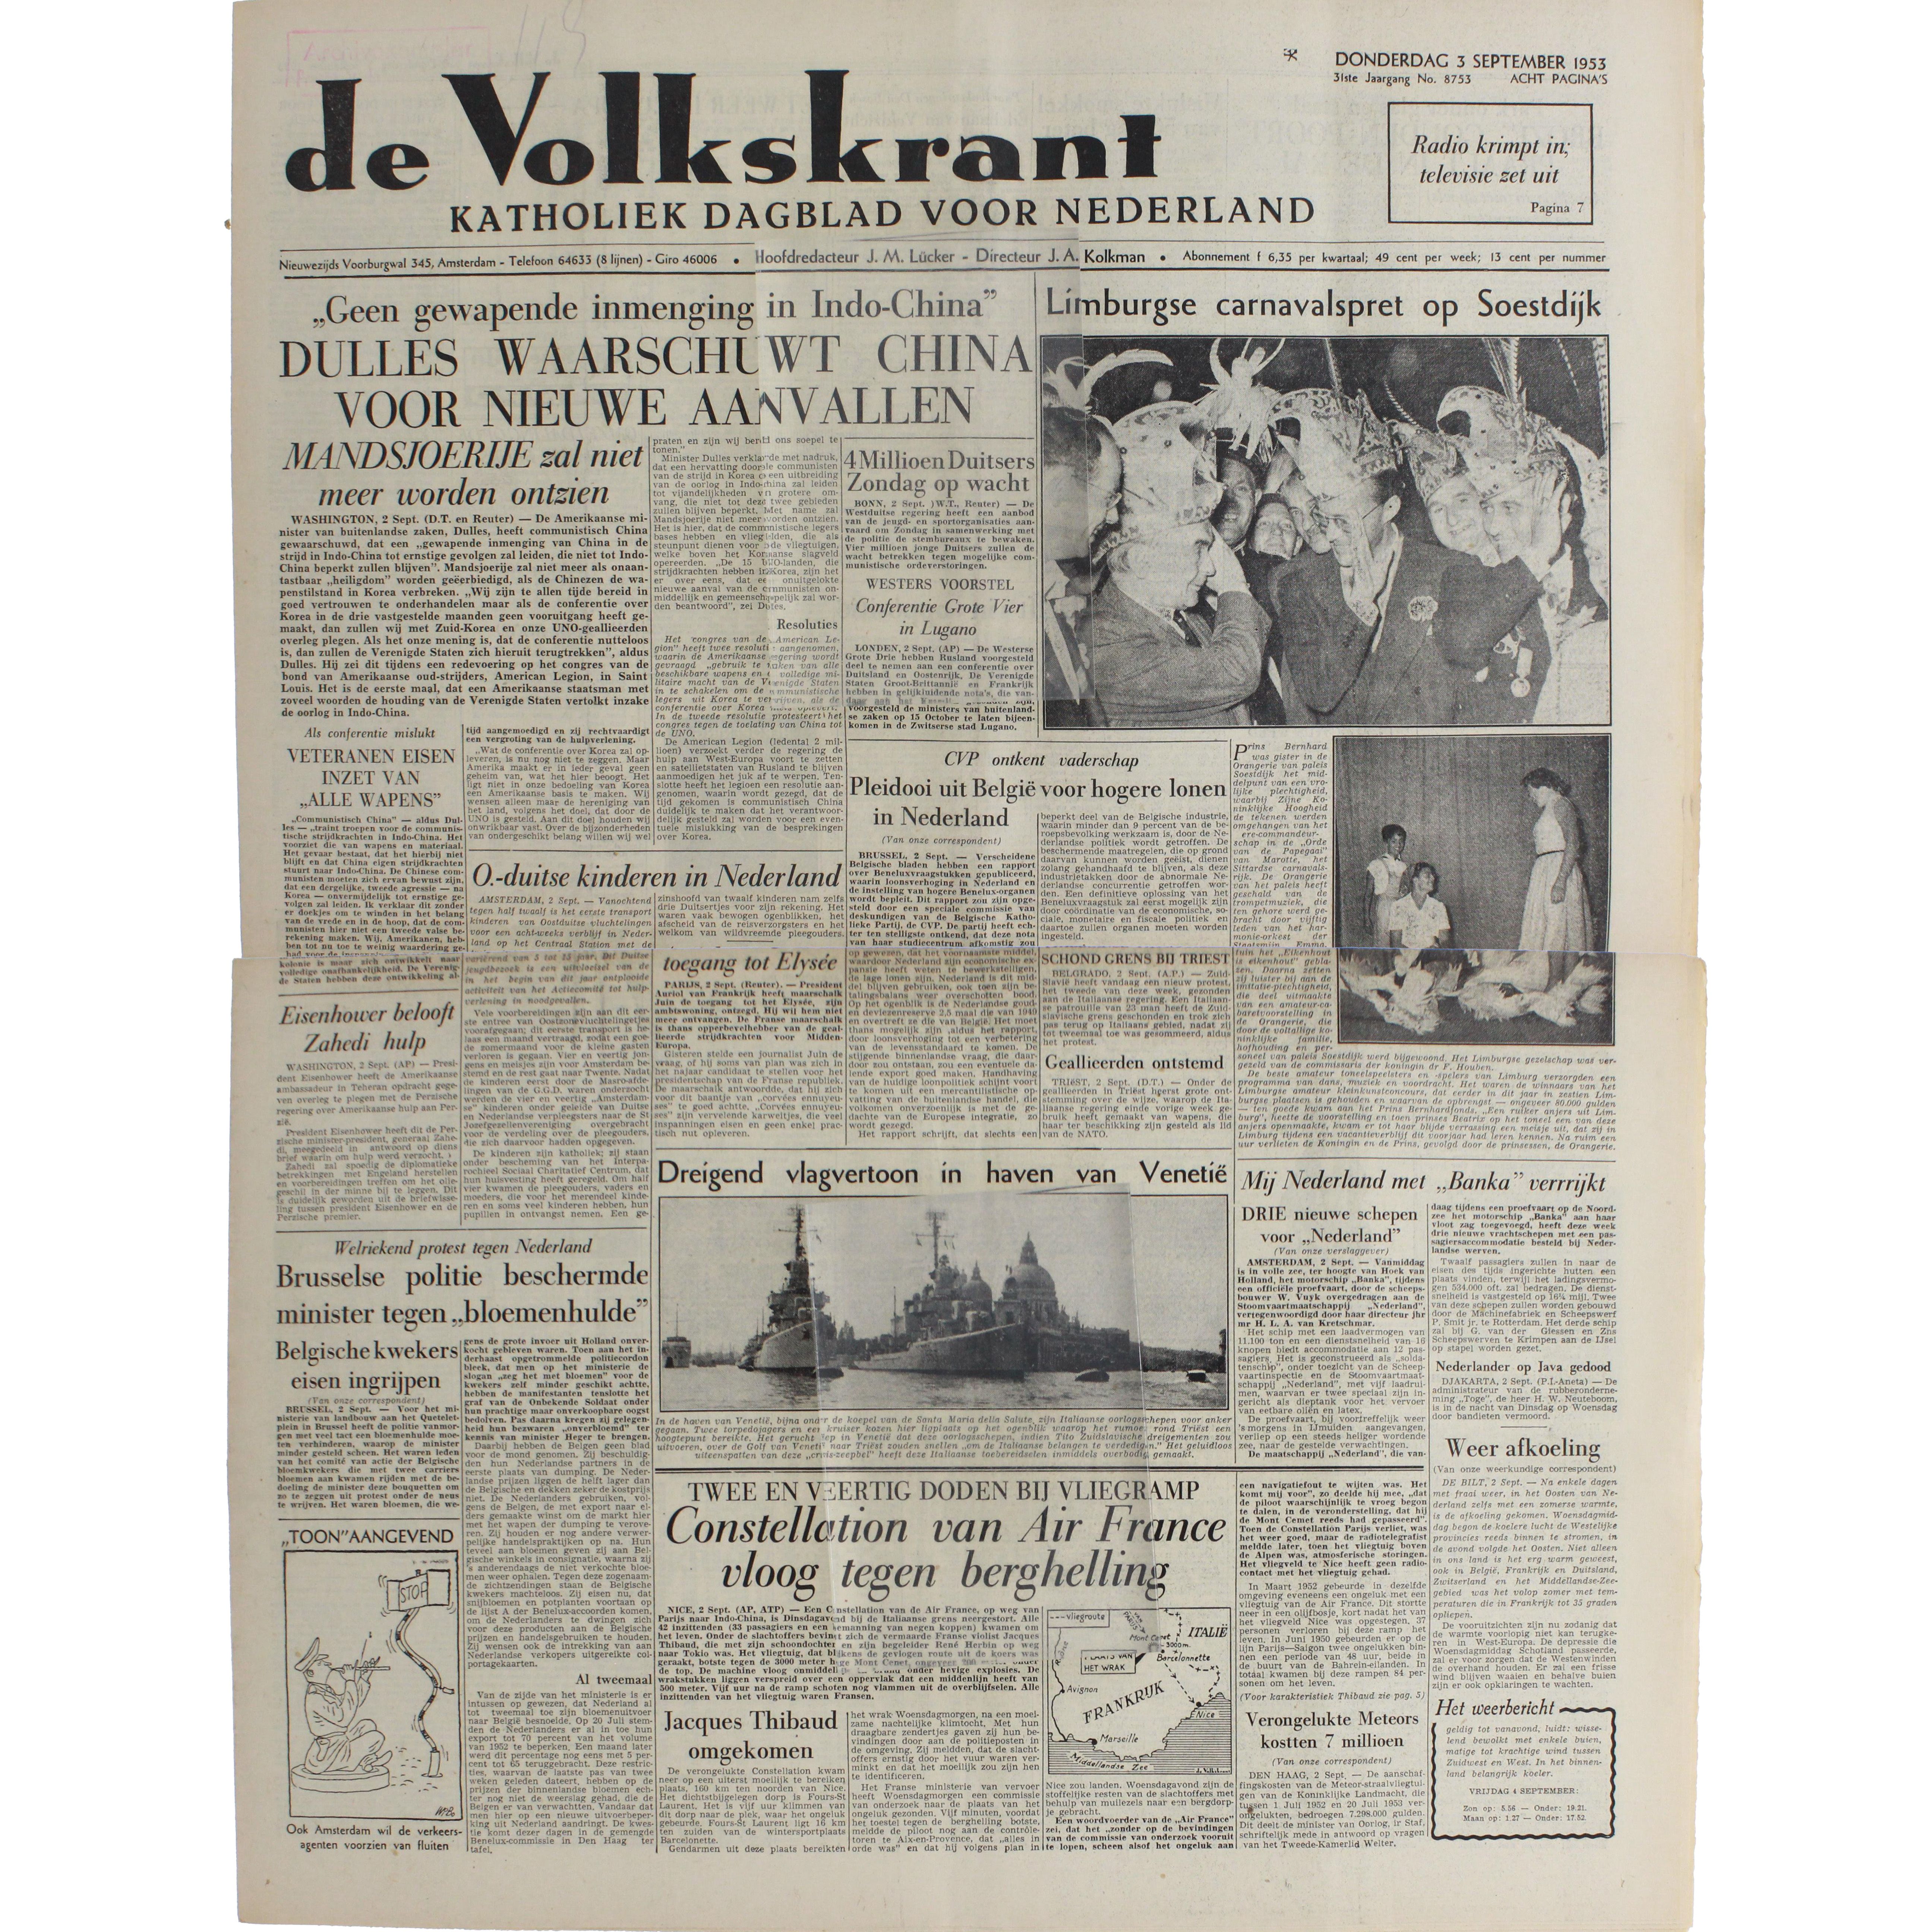 año 1956 recorte prensa publicidad darmen salt - Comprar Documentos antigos  no todocoleccion